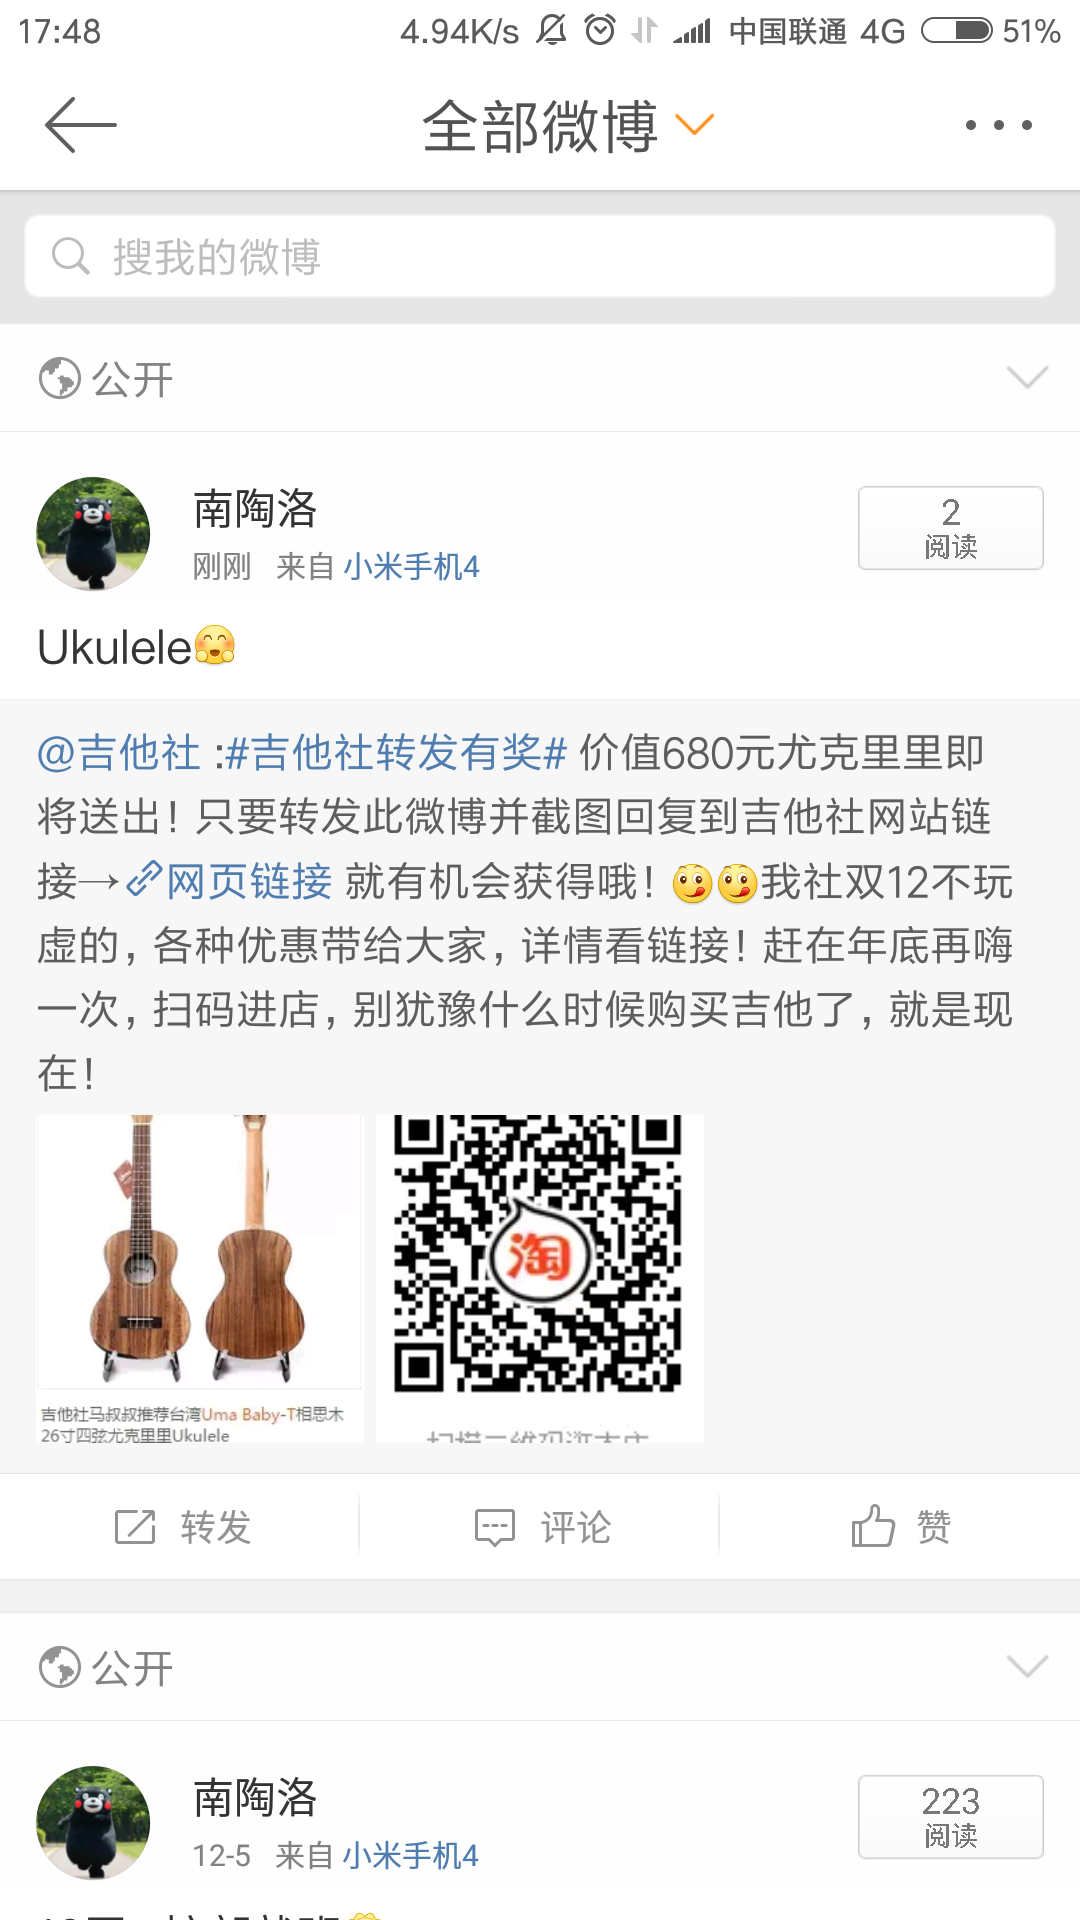 Screenshot_2016-12-09-17-48-12-138_com.sina.weibo.png